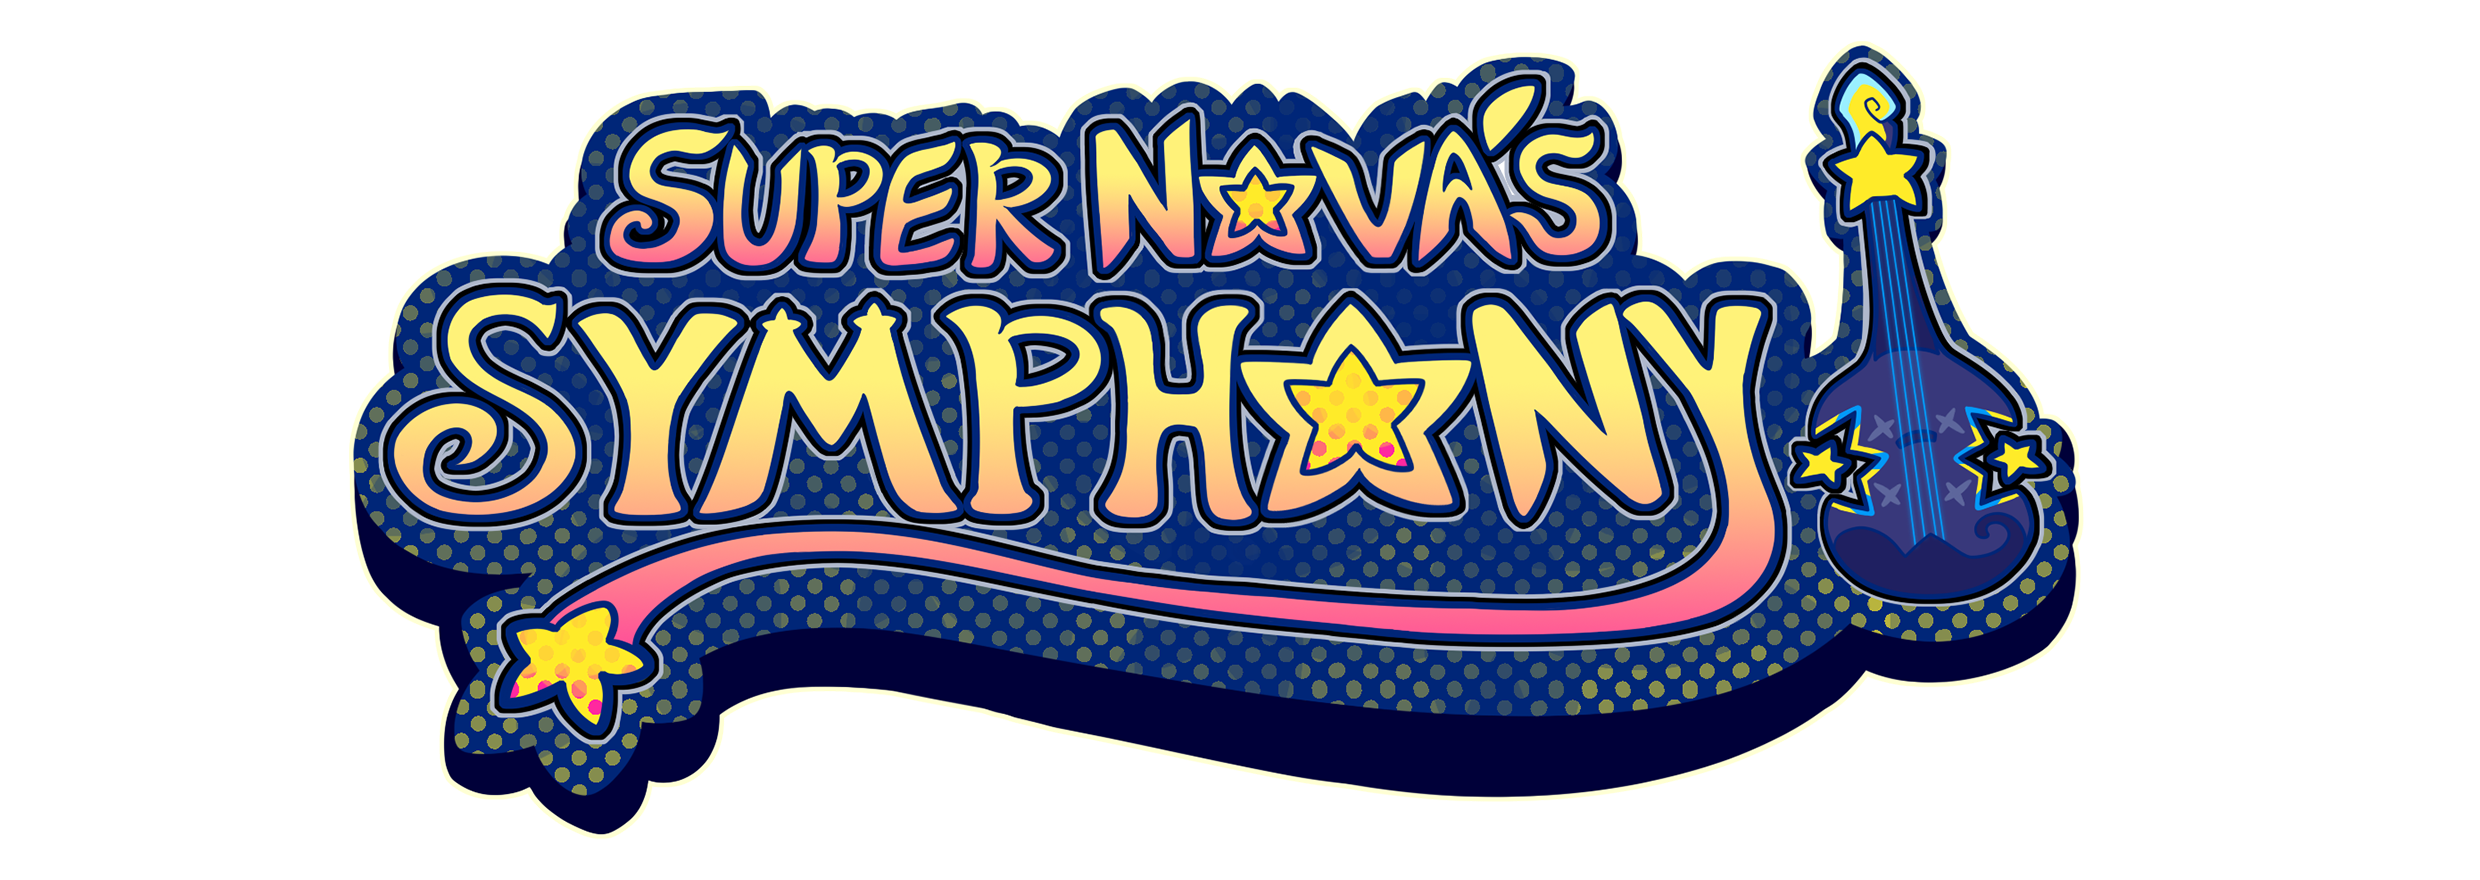 Super Nova's Symphony